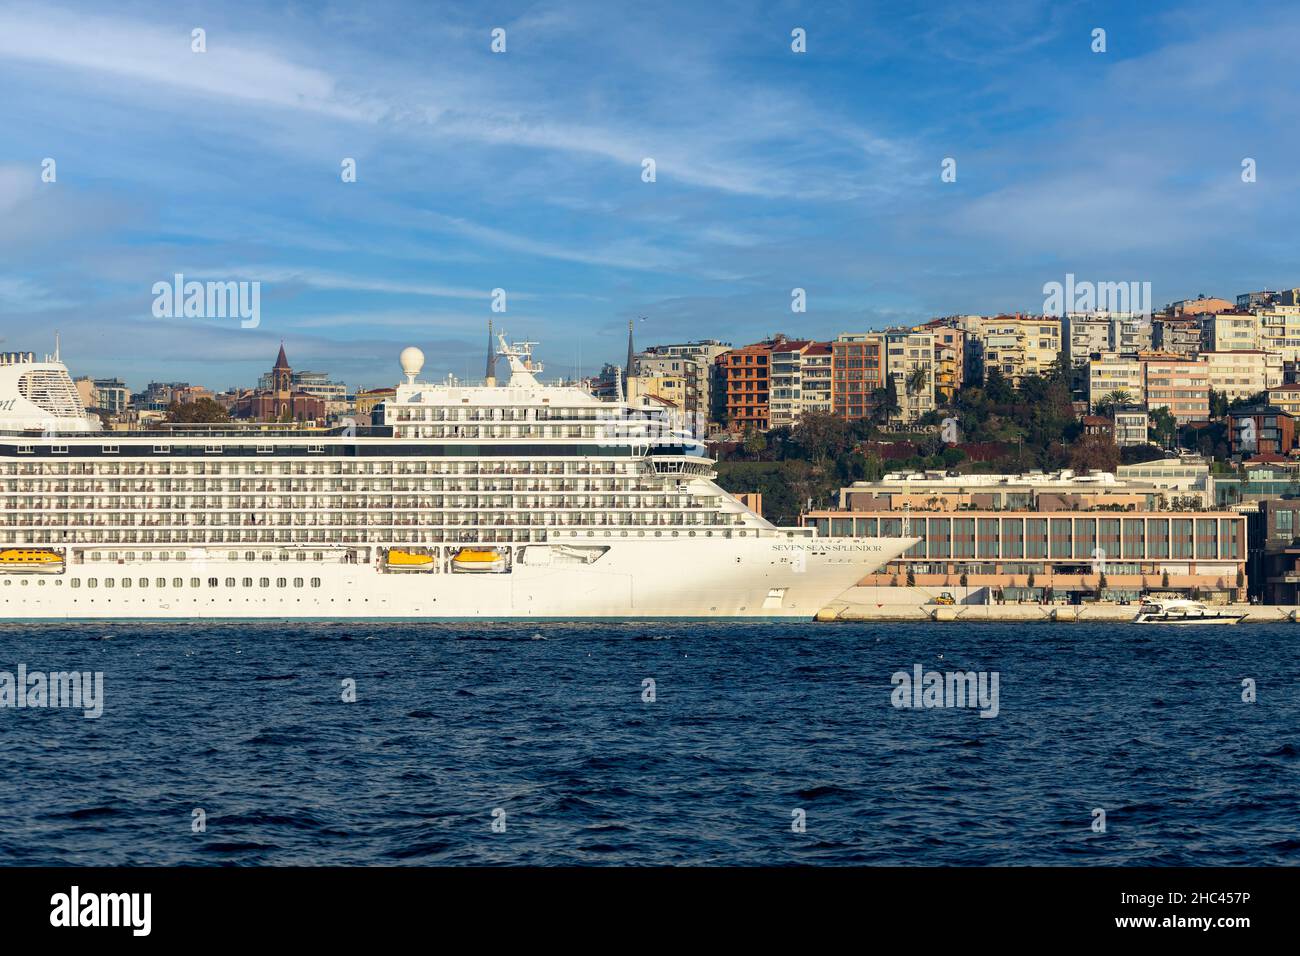 Blick auf das am Terminal in Galataport angedockte Kreuzschiff. Galataport ist ein Kreuzfahrthafen im Stadtteil Galata in Istanbul, Türkei. Stockfoto